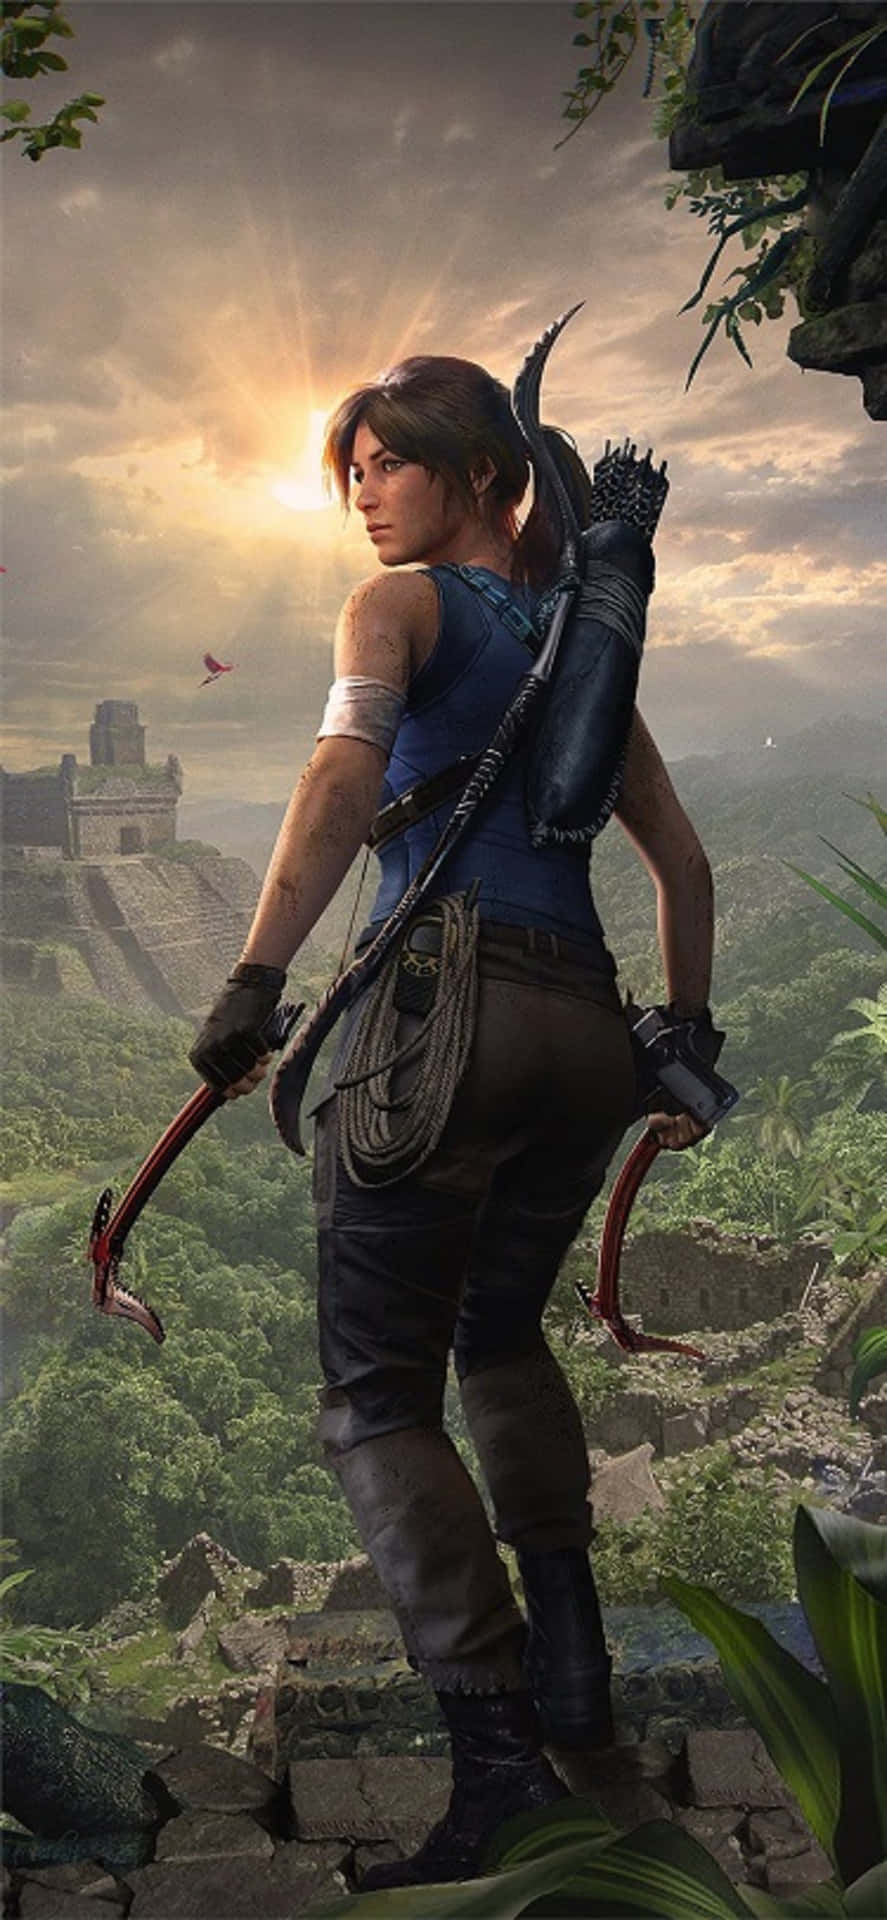 Lespettacolari Immagini Di Shadow Of The Tomb Raider Su Un Iphone X